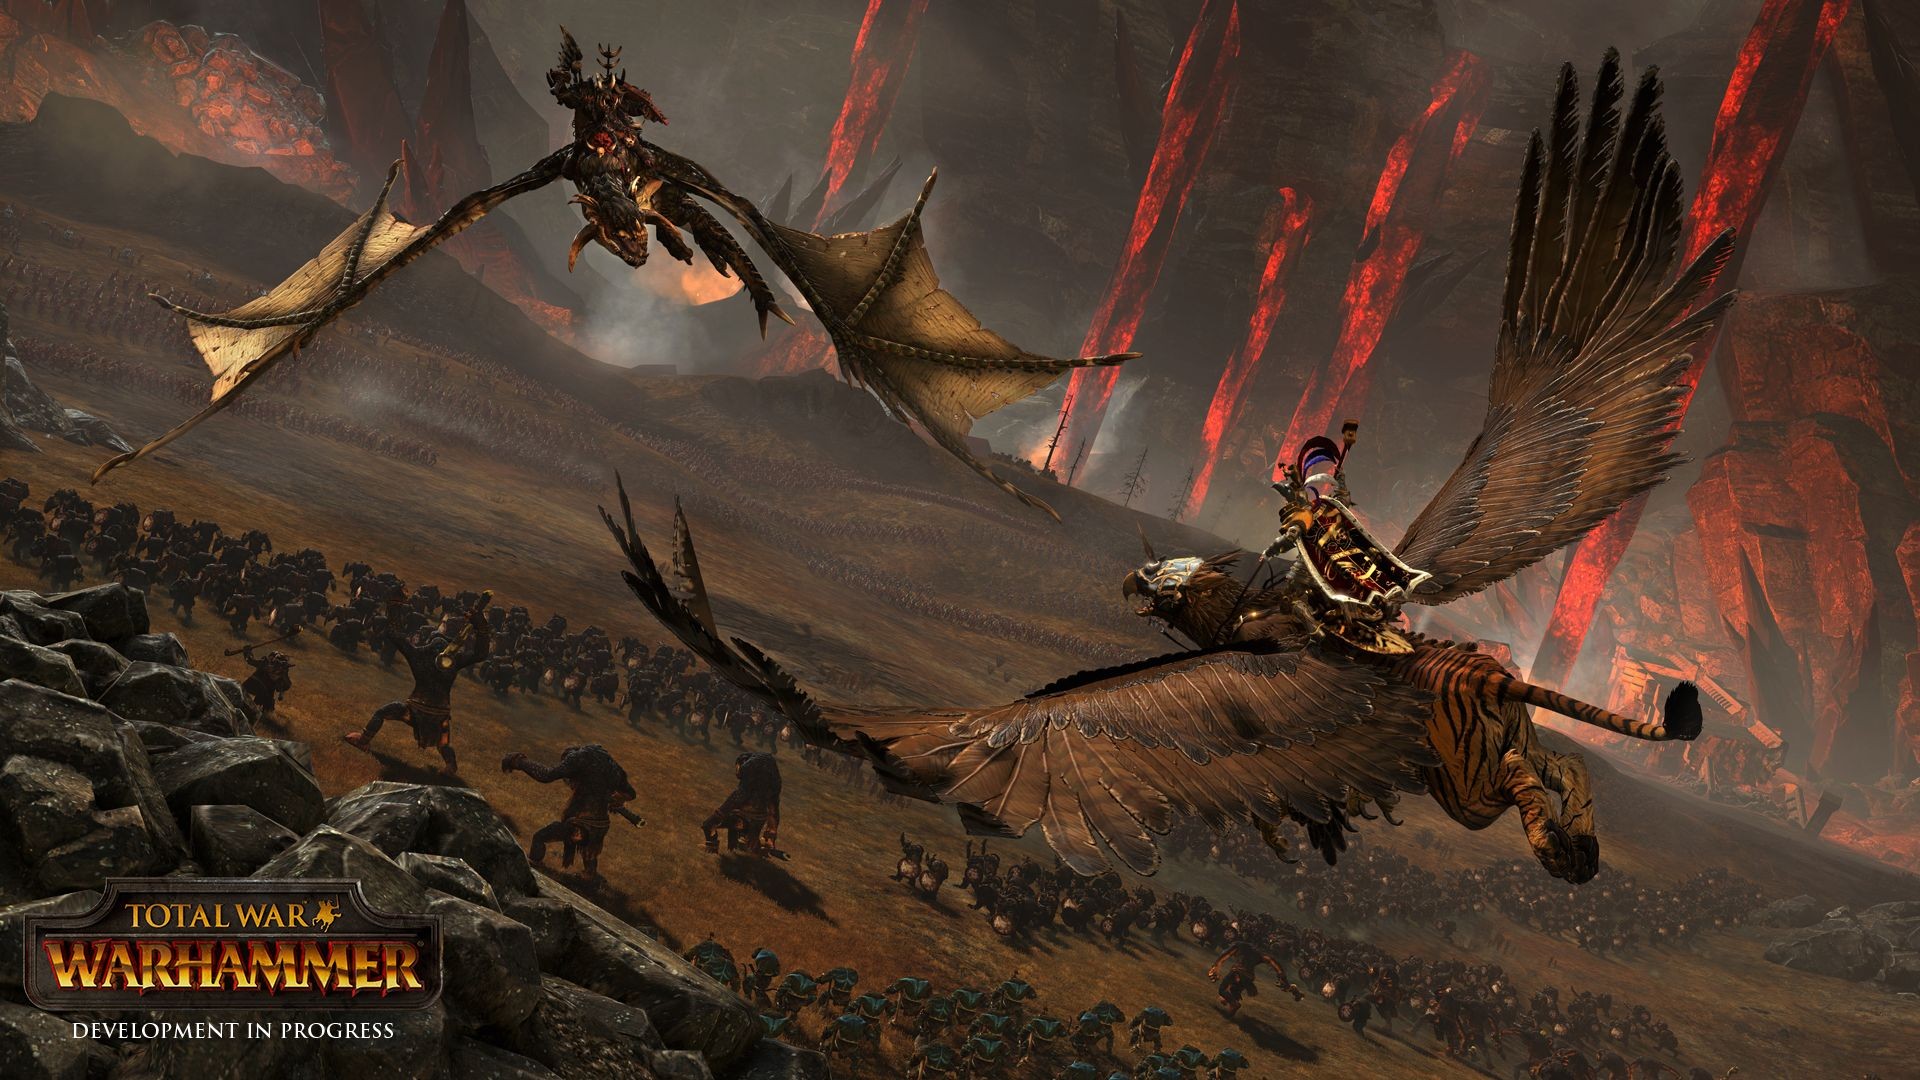 Total War: Warhammer, Orcs, Fantasy Battle, Warhammer, PC gaming Wallpaper